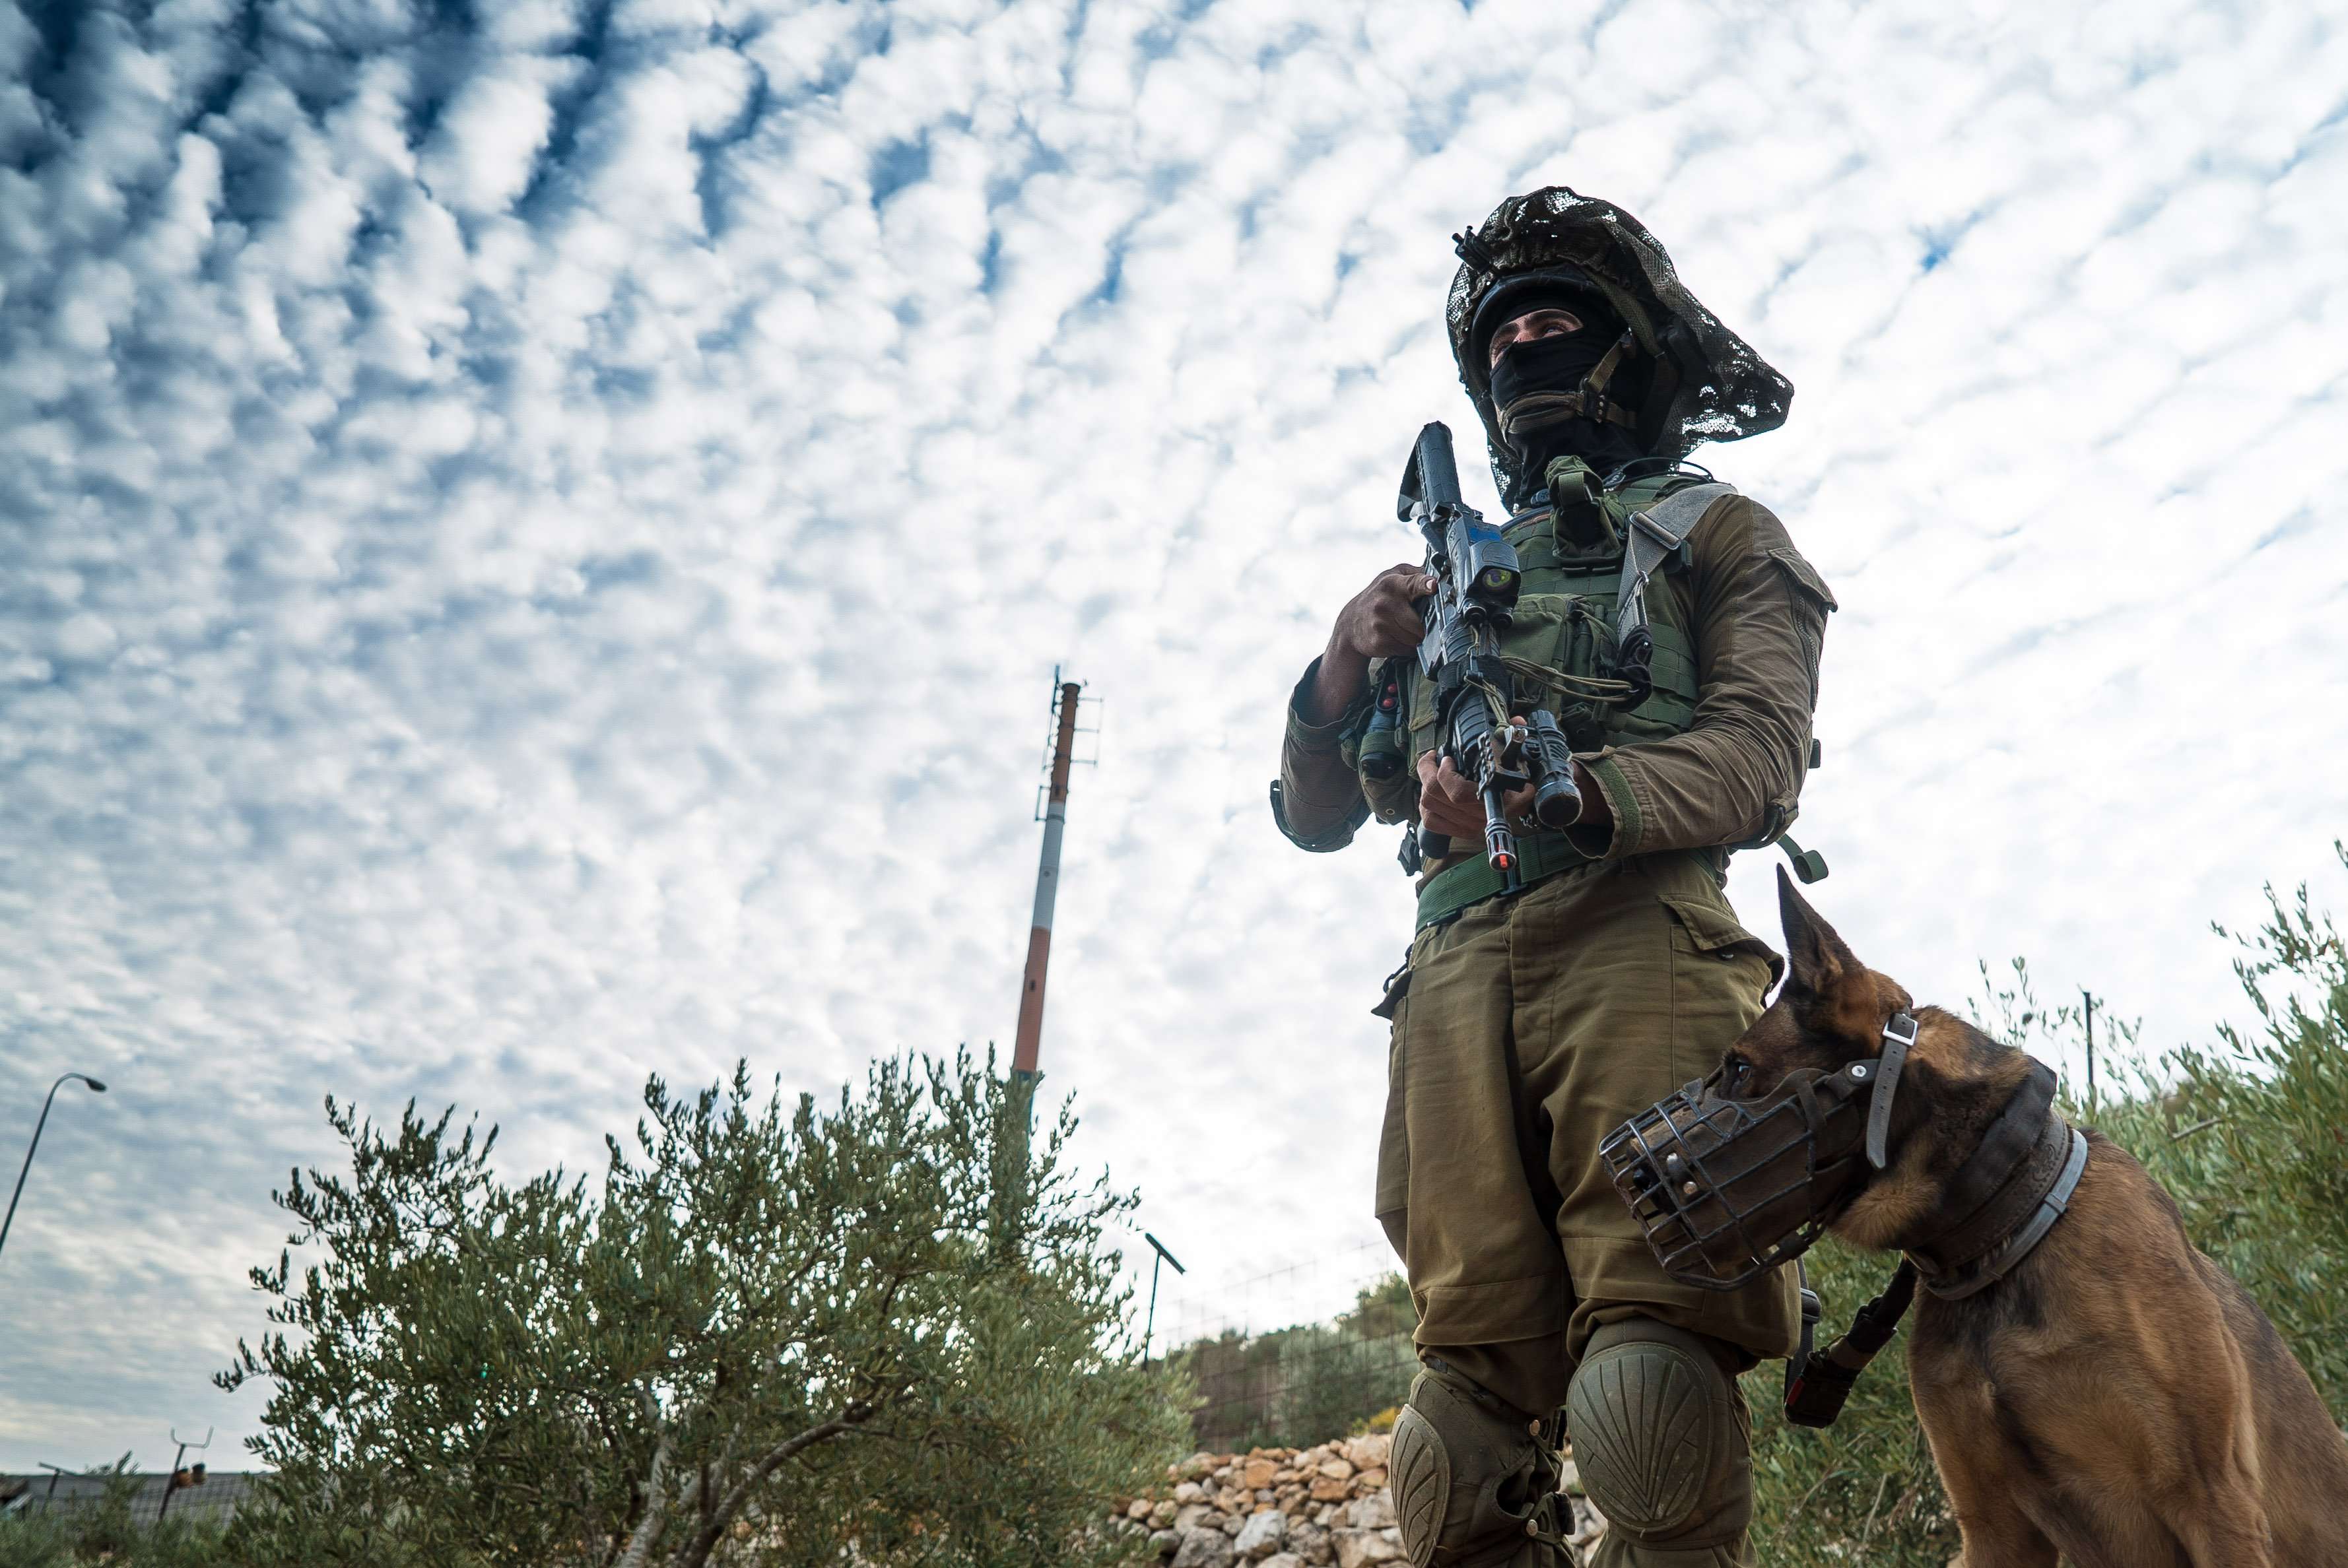 Ισραήλ: Ο στρατός αναπτύσσει επιπλέον δυνάμεις στα σύνορα με τον Λίβανο